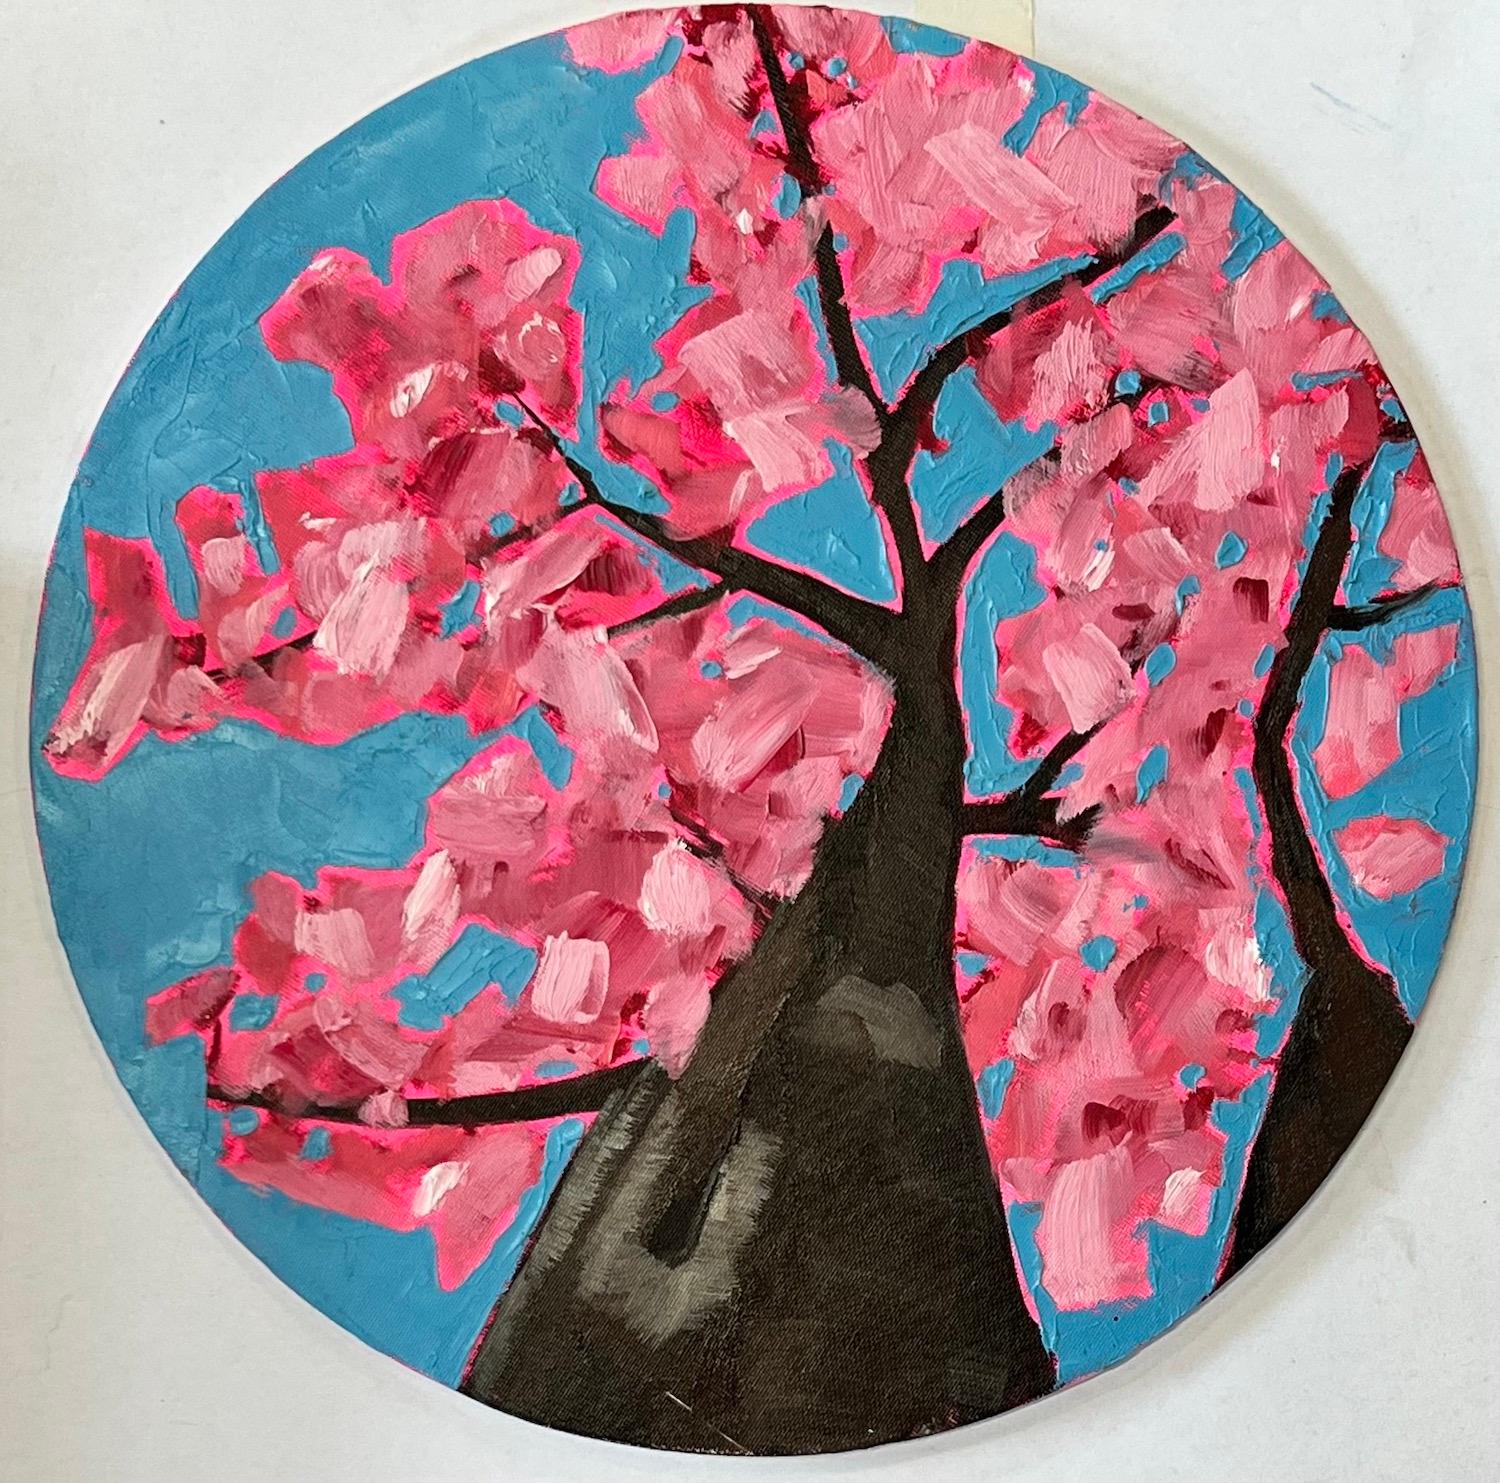 Emily Finch, Looking Up through Cherry Blossom to Reflect, Art de la santé mentale